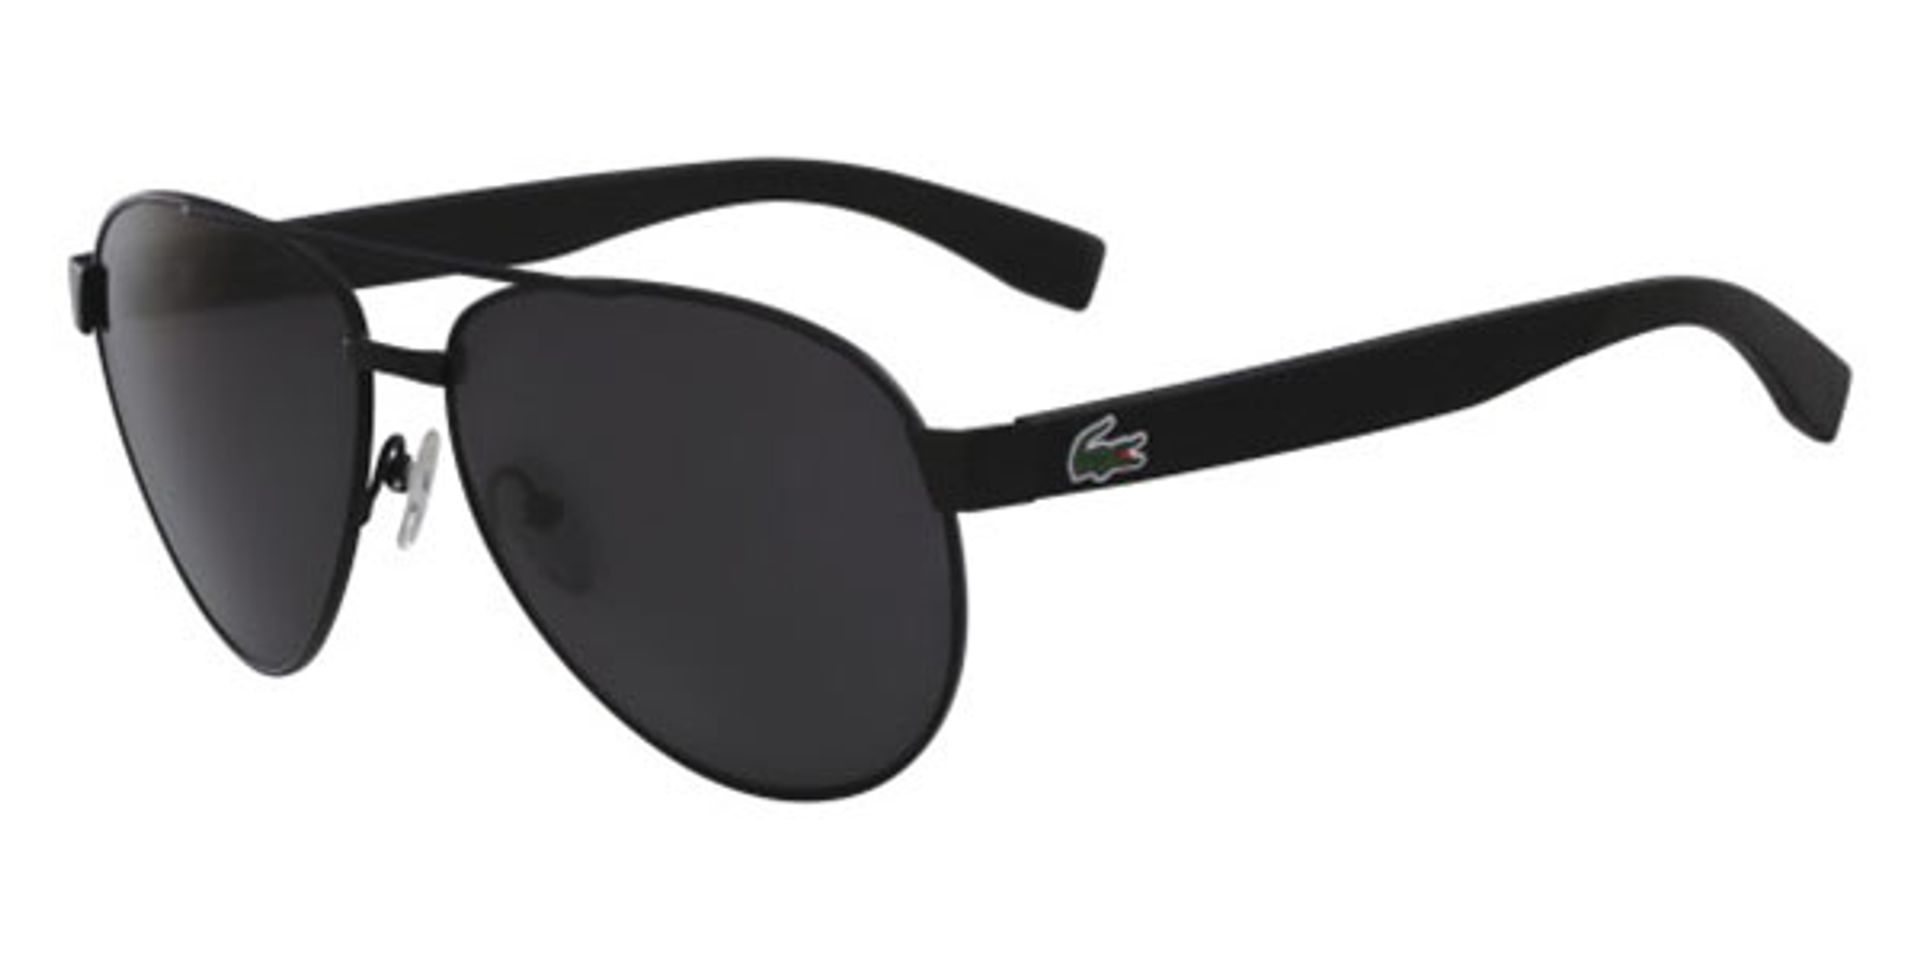 Mắt kính Lacoste L185S 001 Black Matte Sunglasses